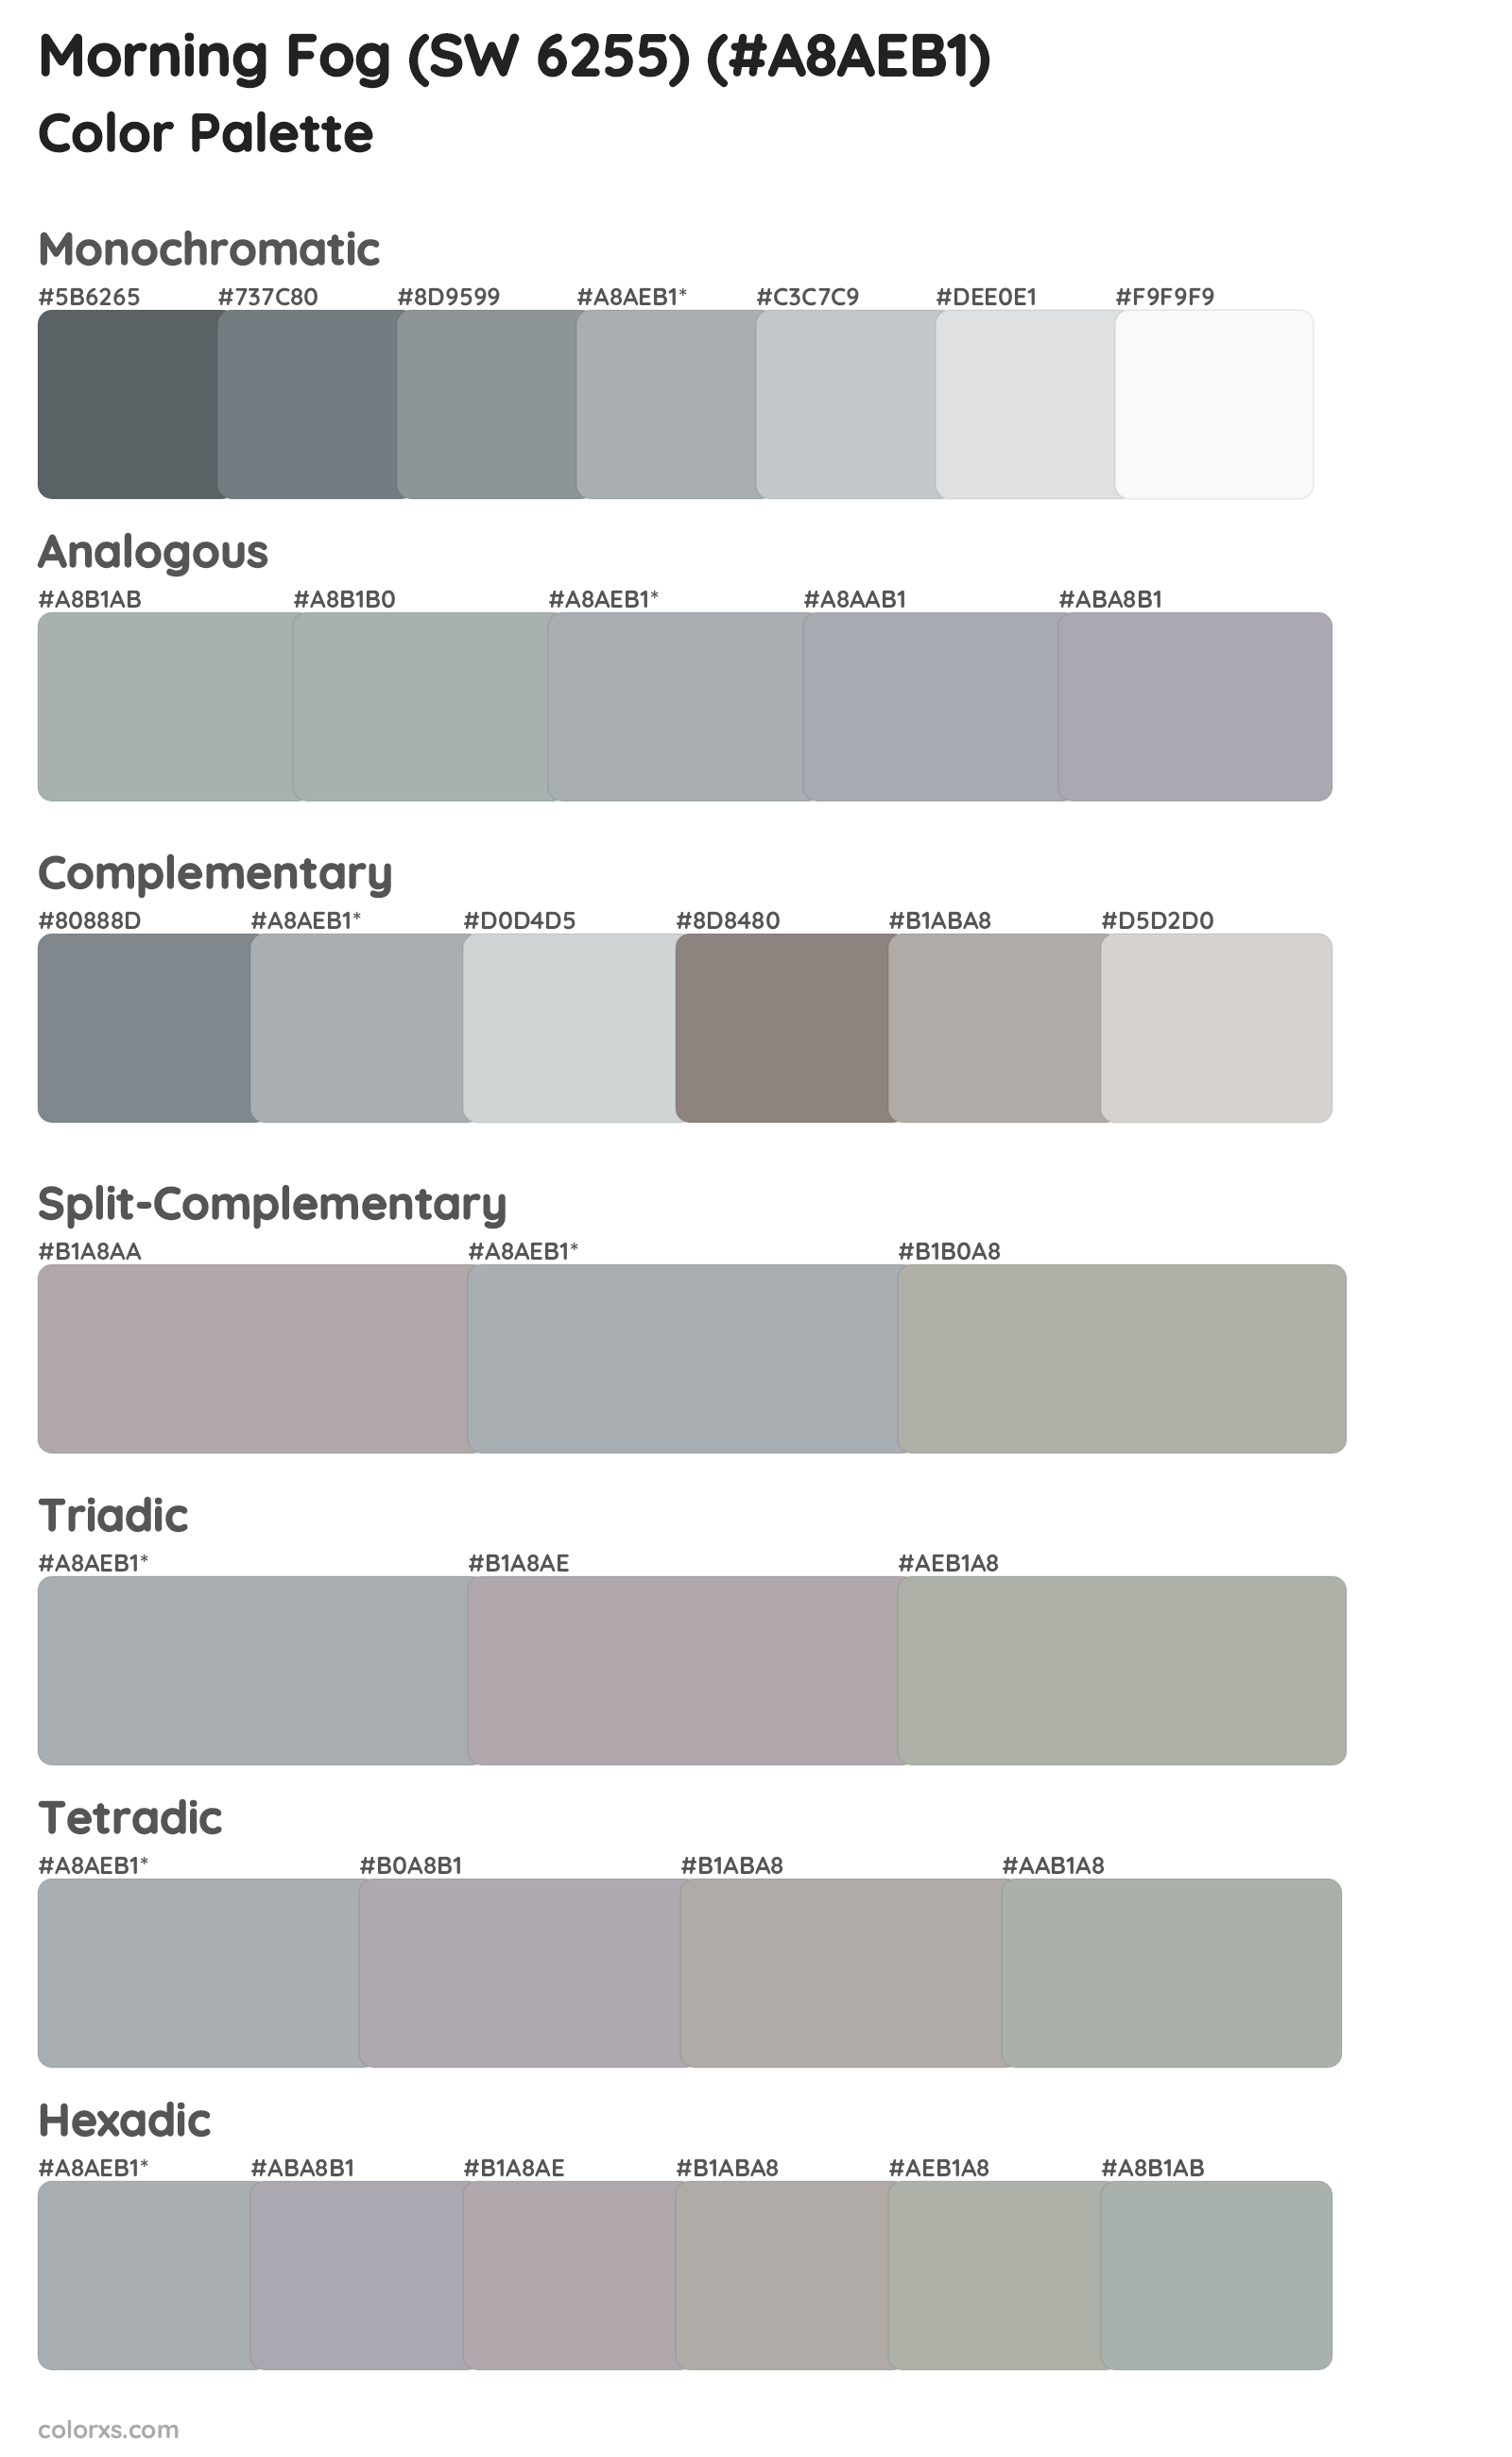 Morning Fog (SW 6255) Color Scheme Palettes